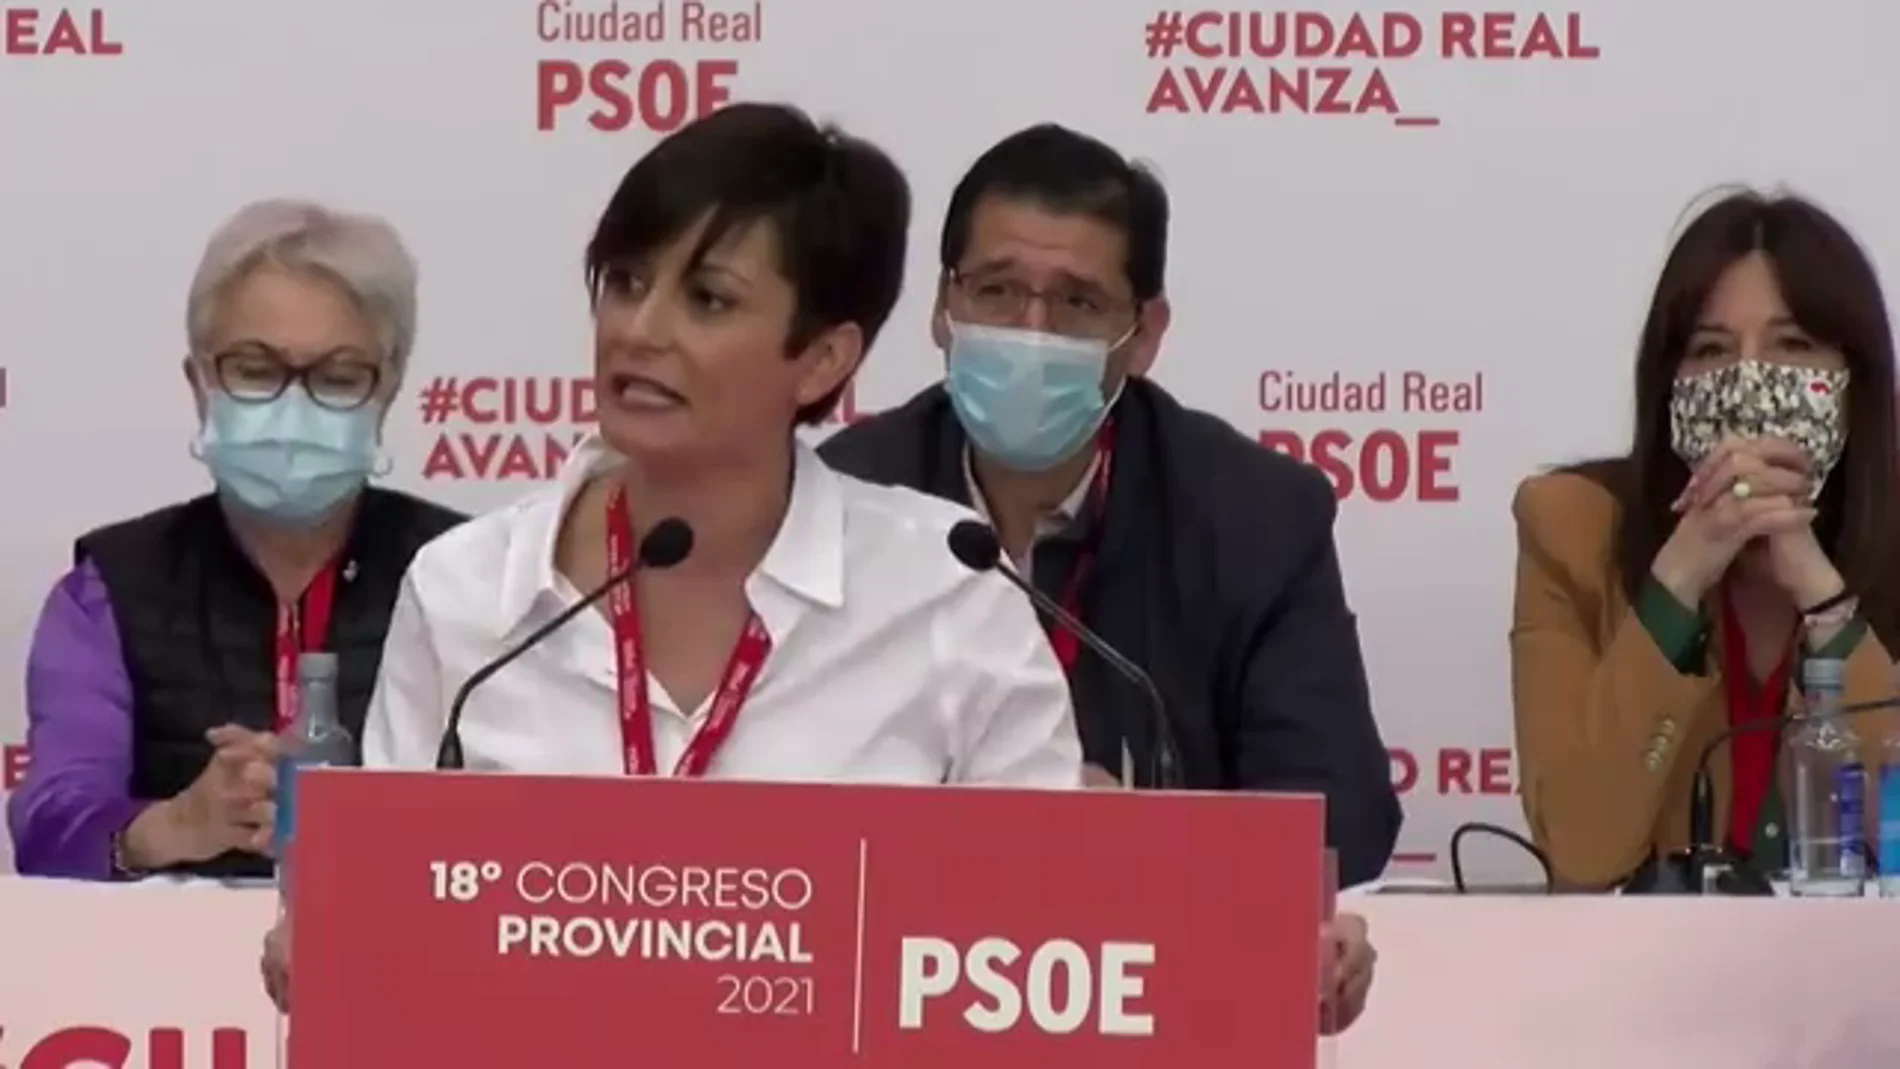 Isabel Rodríguez, ministra portavoz: "El Gobierno va a cumplir su compromiso de derogar la Ley Mordaza"